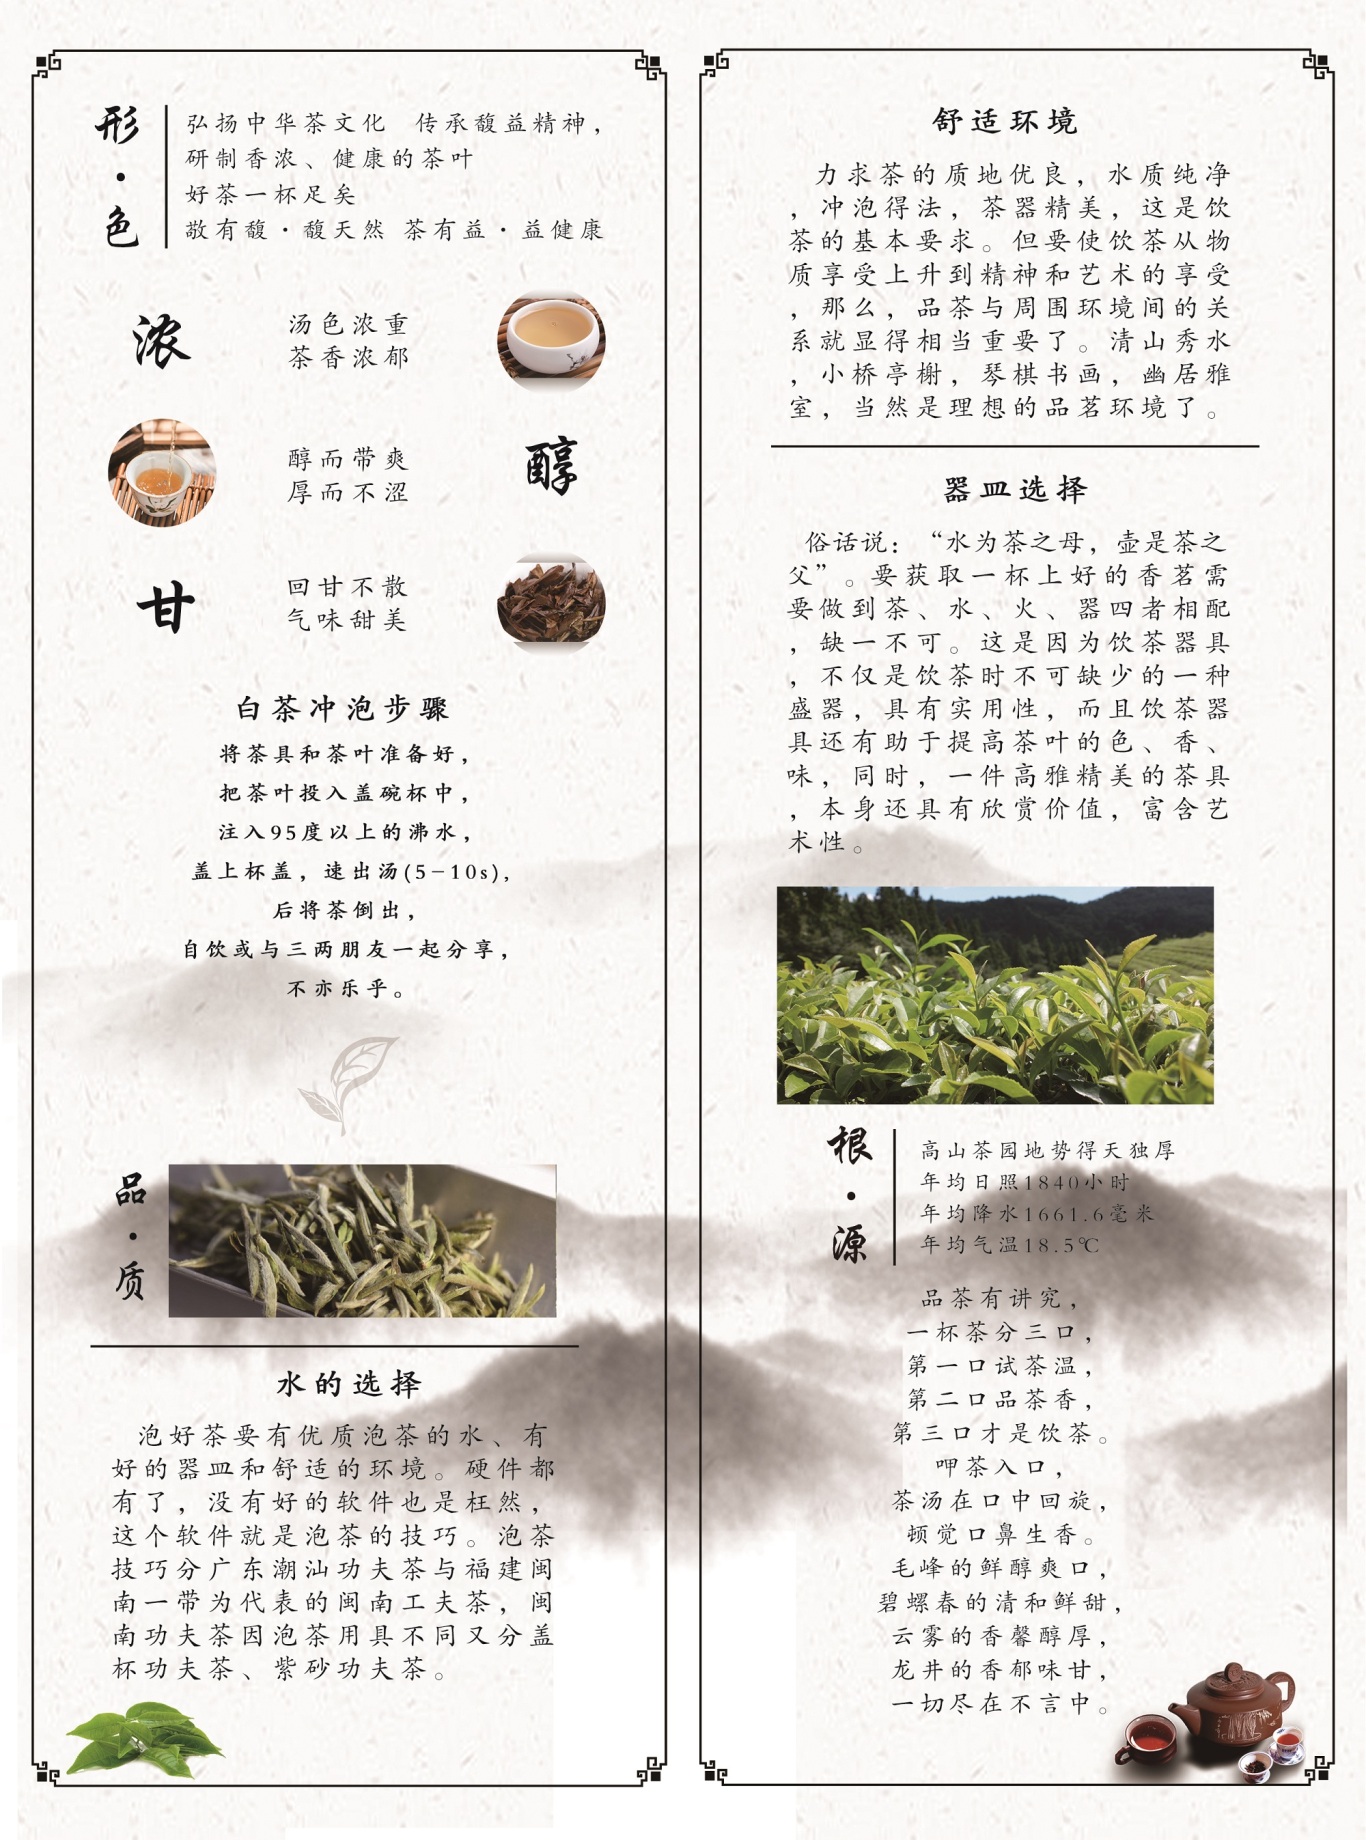 茶文化宣传折页图1